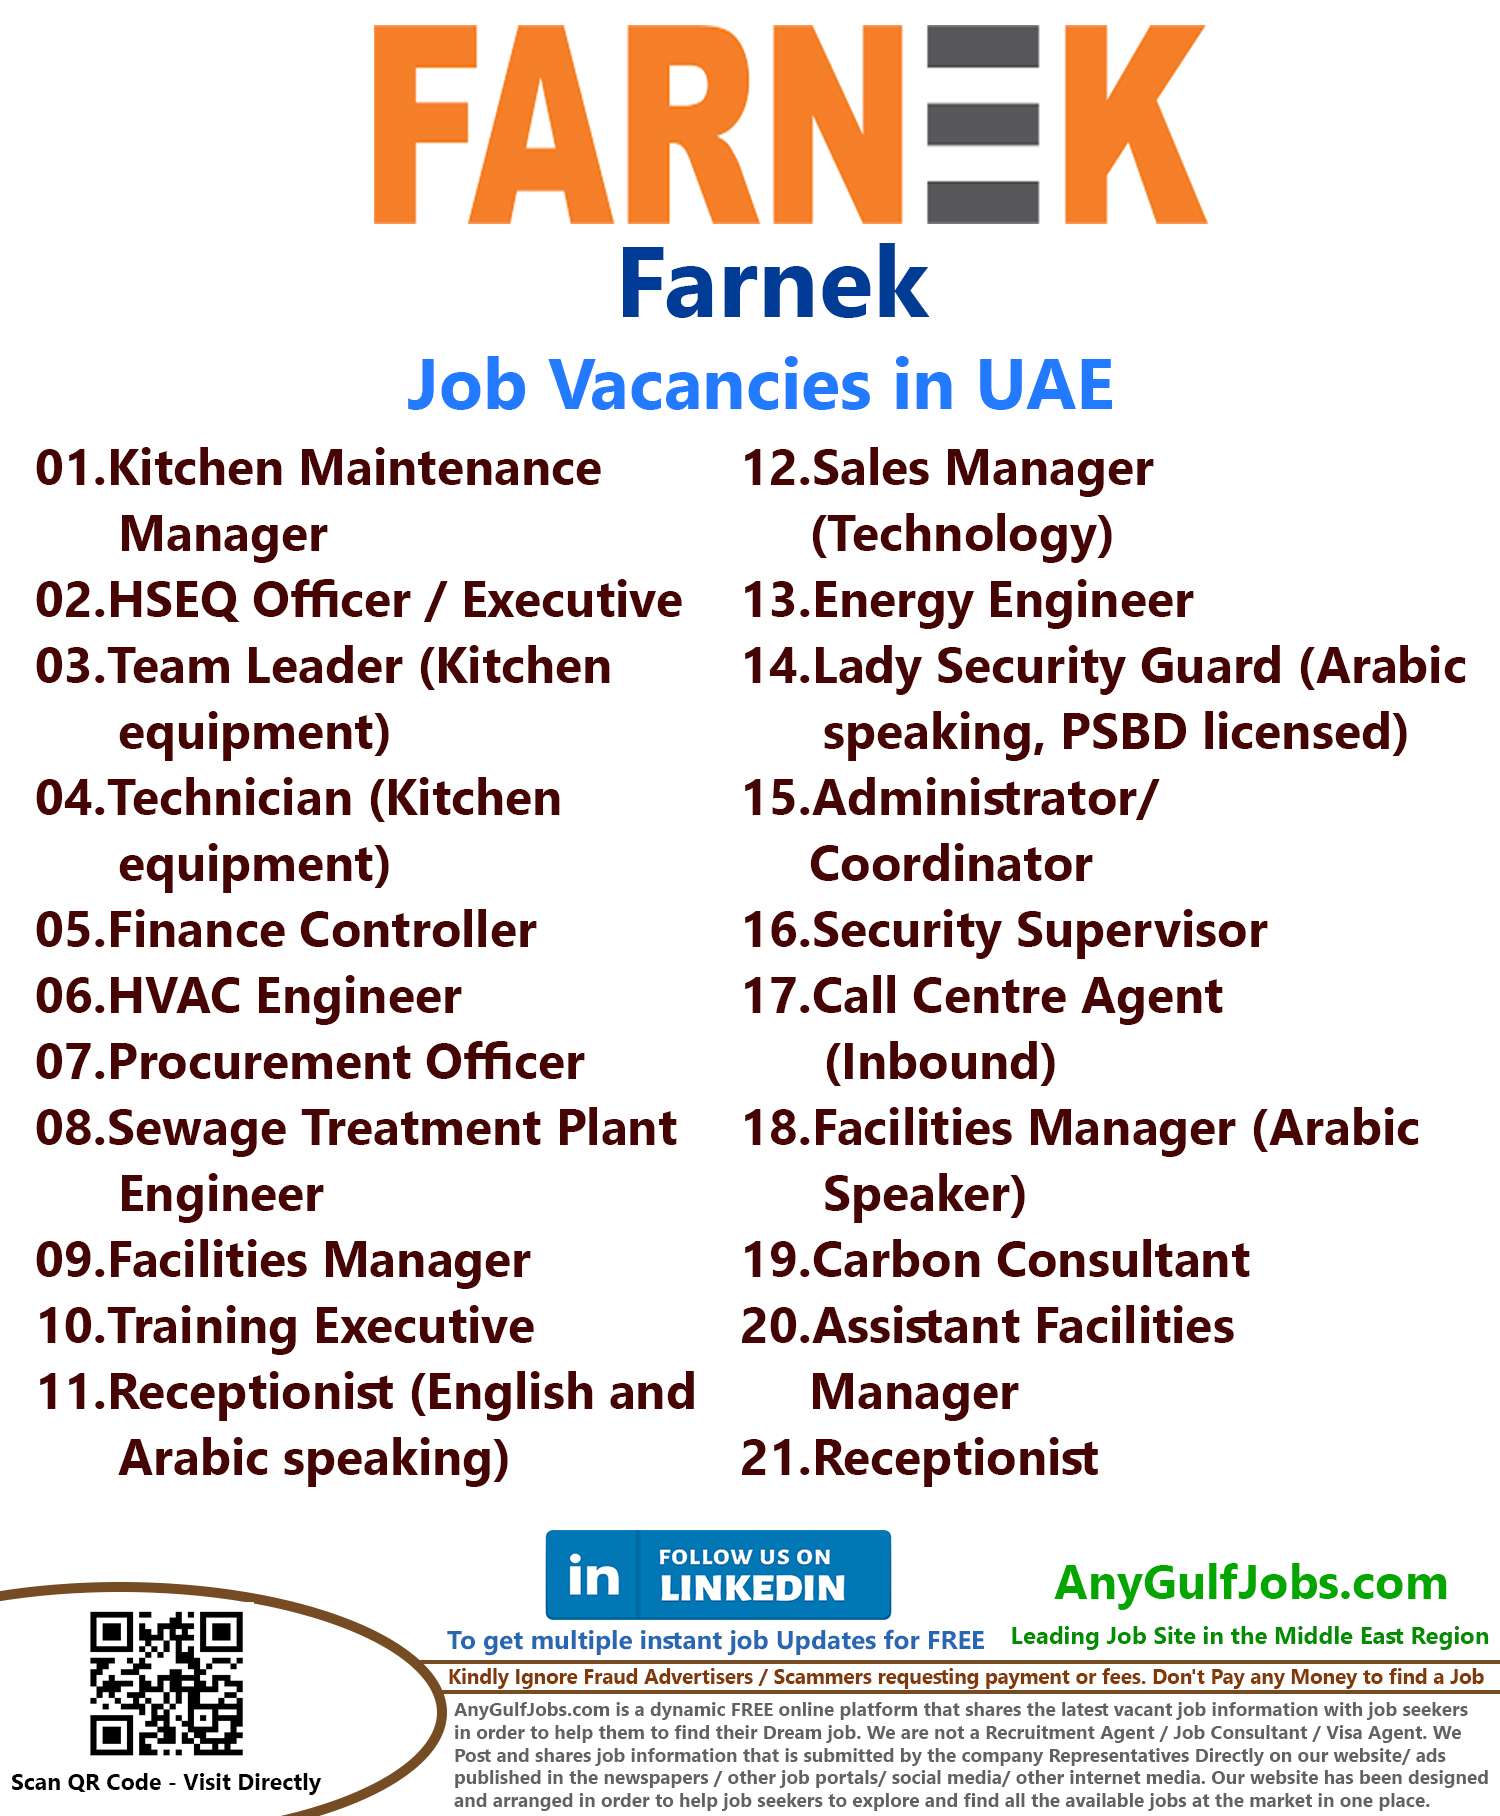 List of Farnek Jobs - UAE 